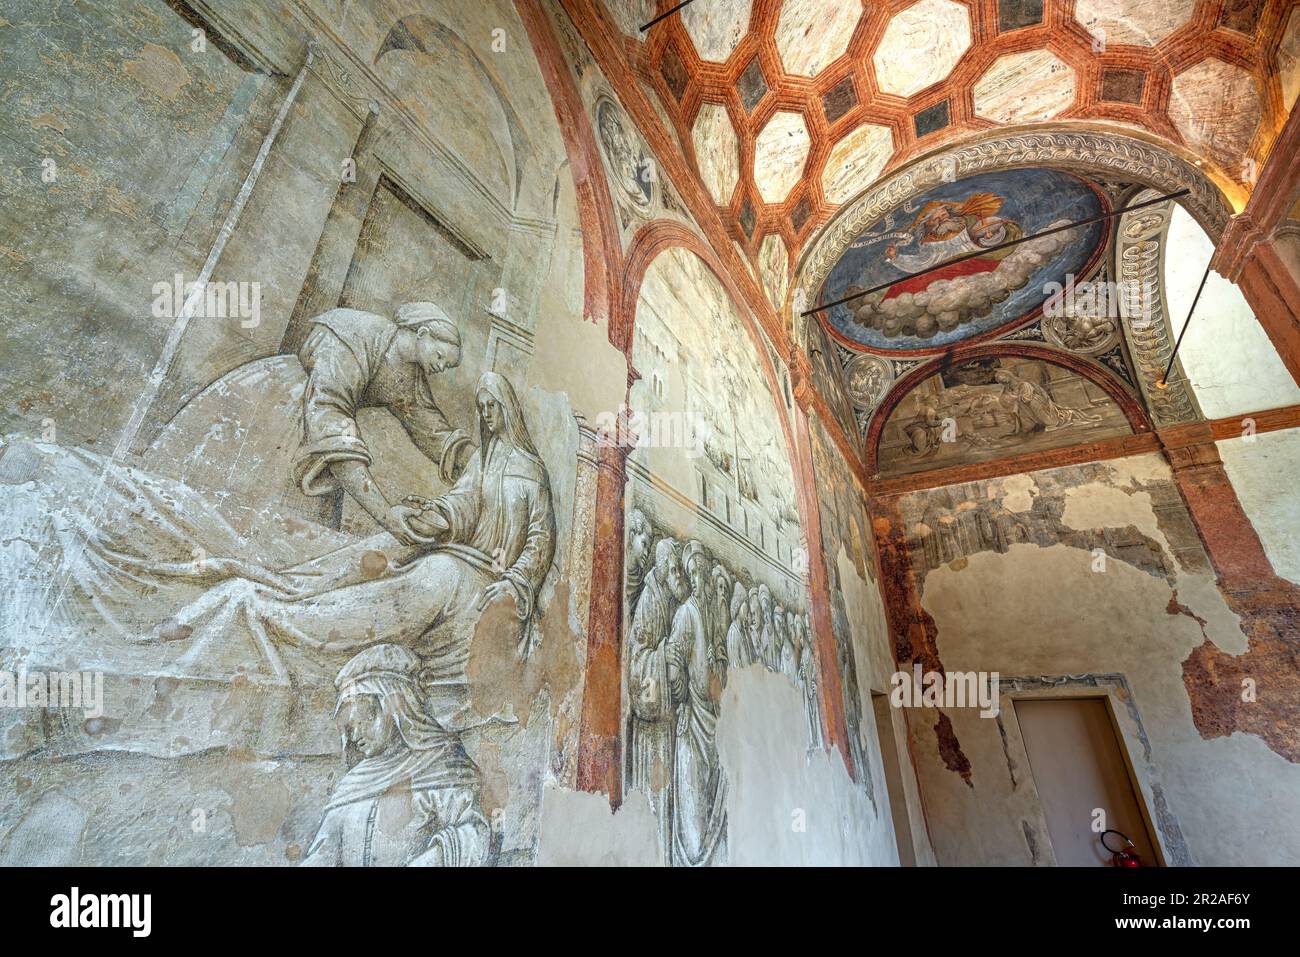 Fresken im Benediktinerkloster von San Pietro, einem außergewöhnlichen monumentalen Komplex in Reggio Emilia. Reggio Emilia, Emilia Romagna, Italien Stockfoto